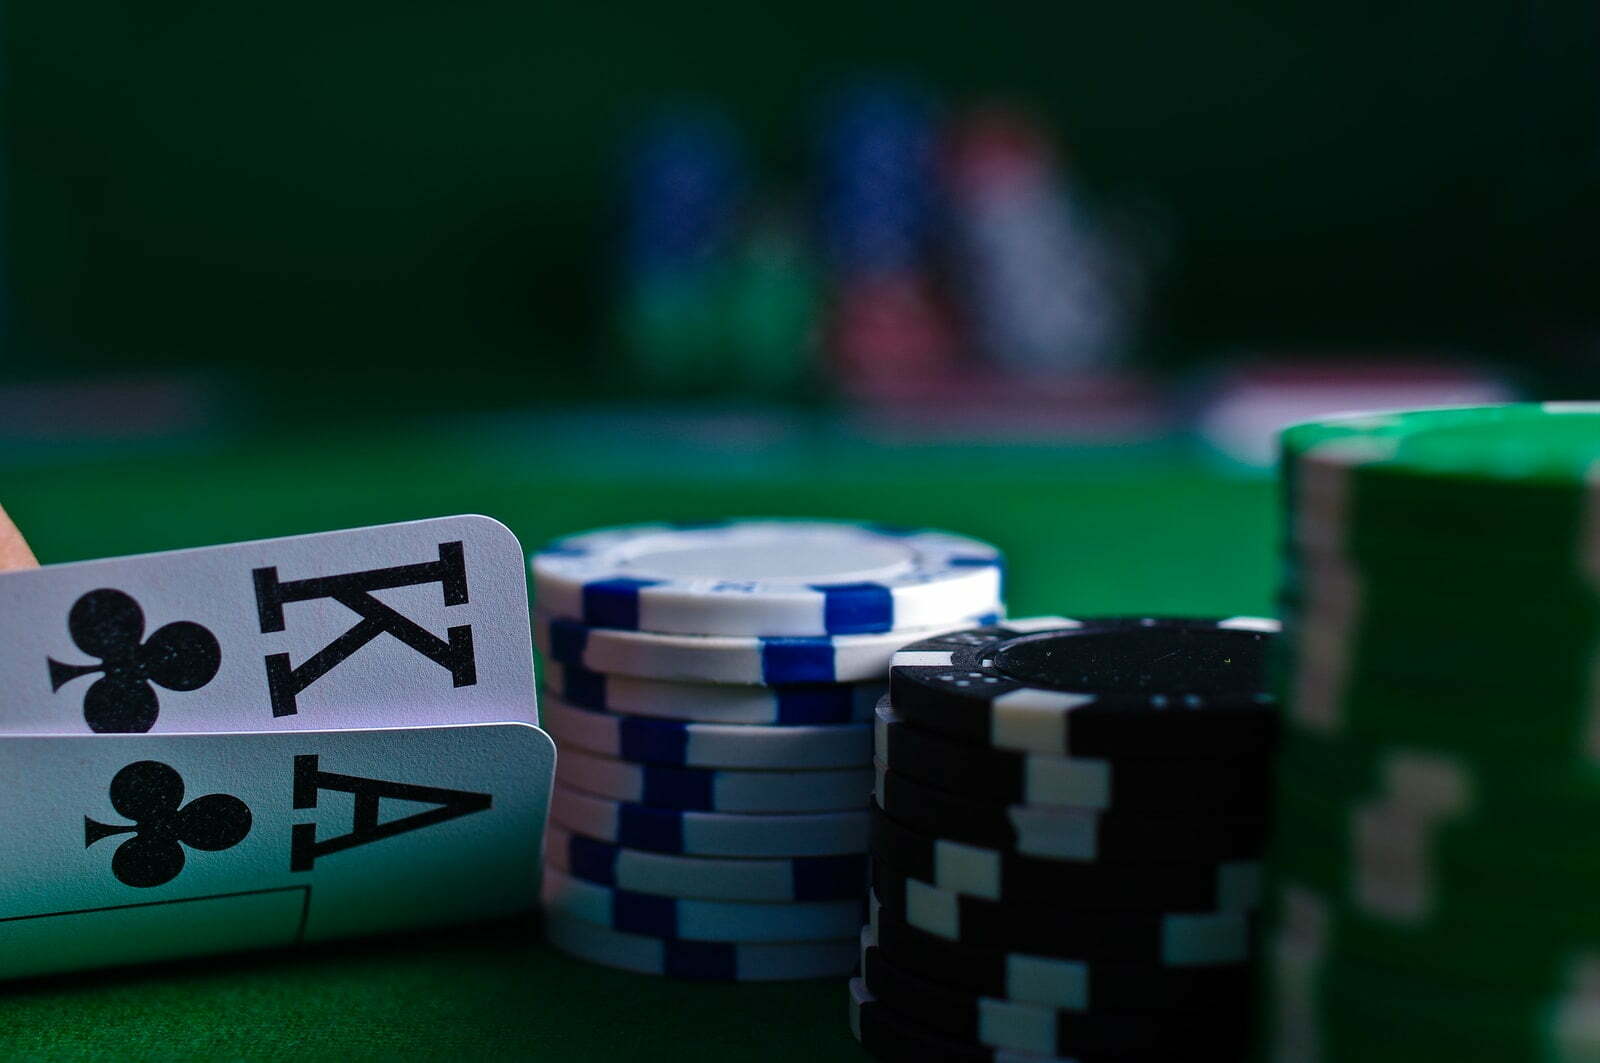 Poker bord i et casino